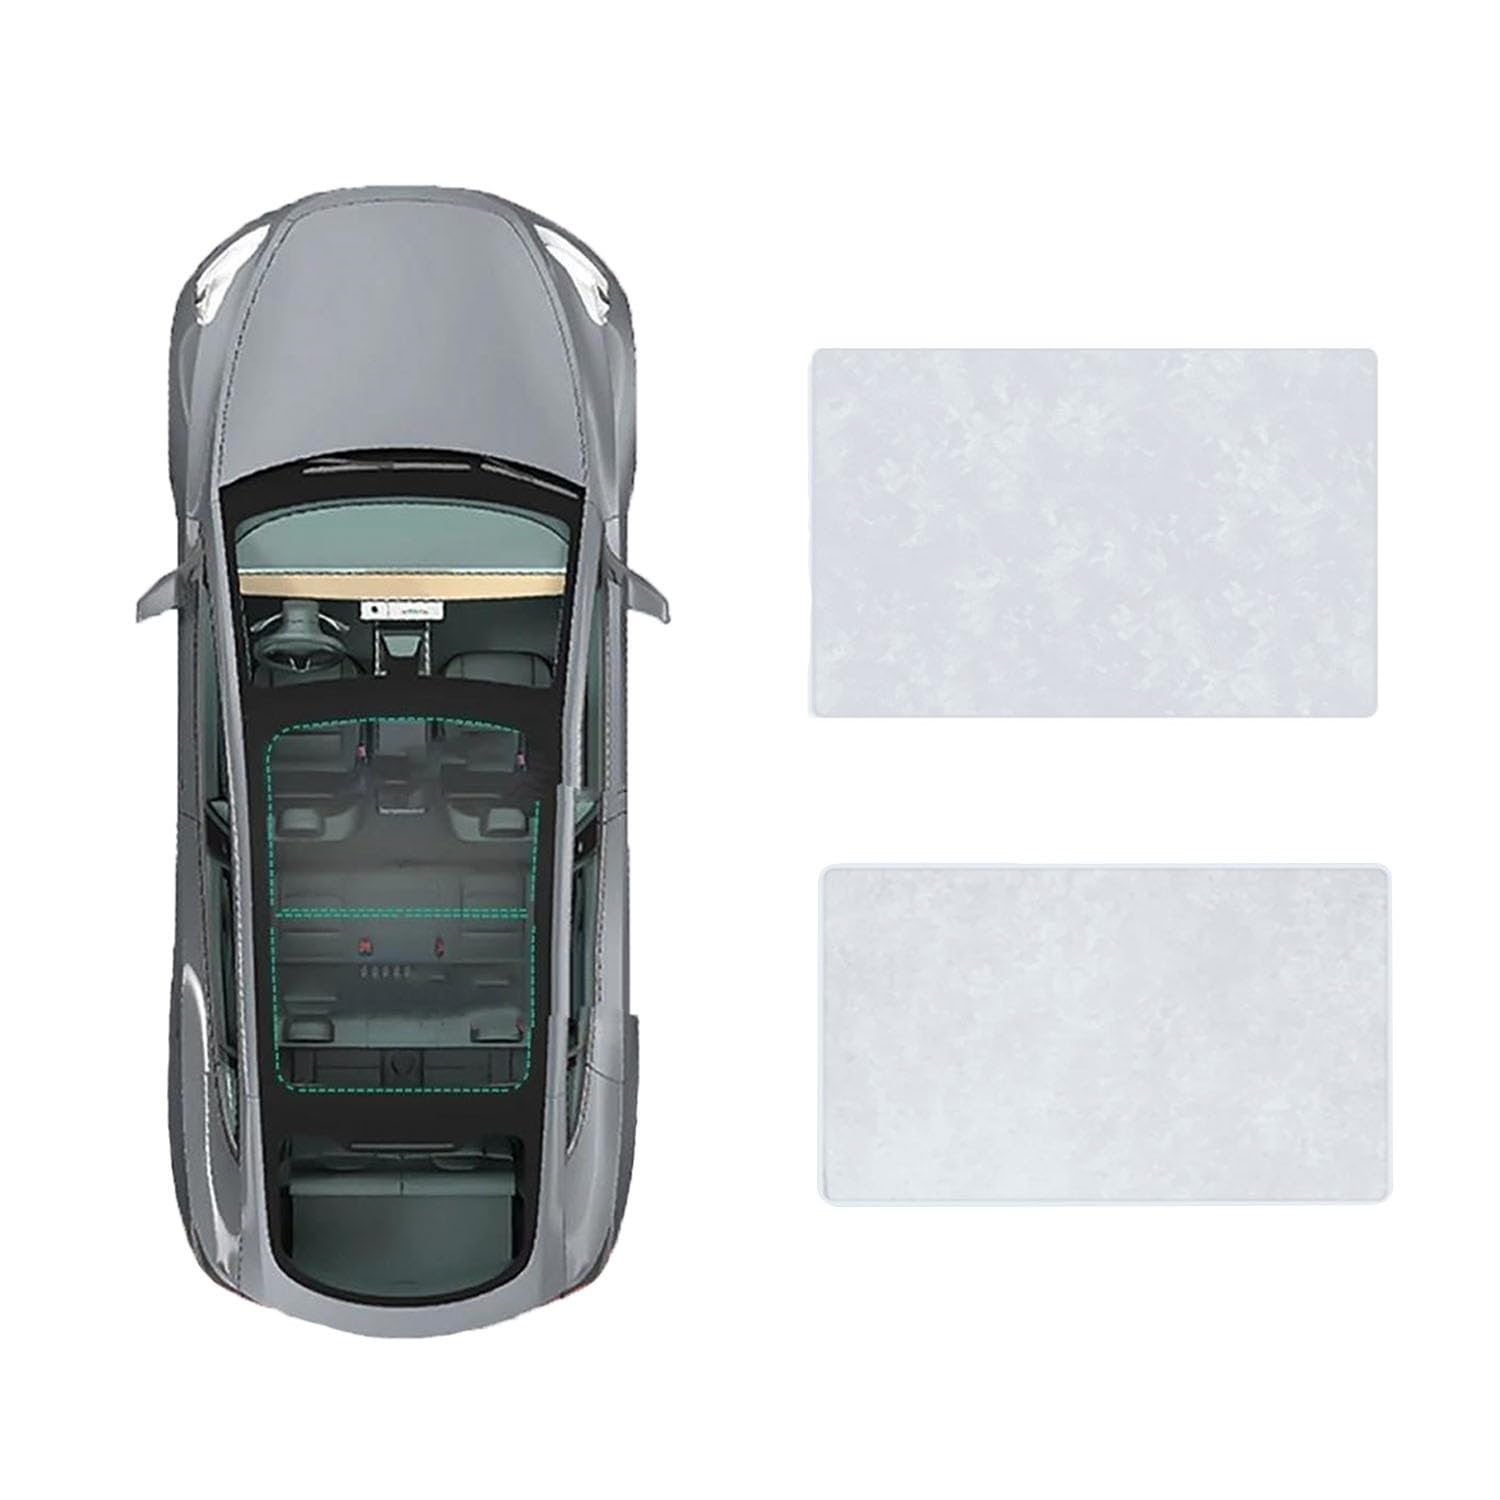 Für Hongqi HS5 2019- Auto-Schiebedach-Beschattung,Dach Wärme Isolierung Anti-UV Visier Auto Zubehör,B-Gray white Suede von ANRAM